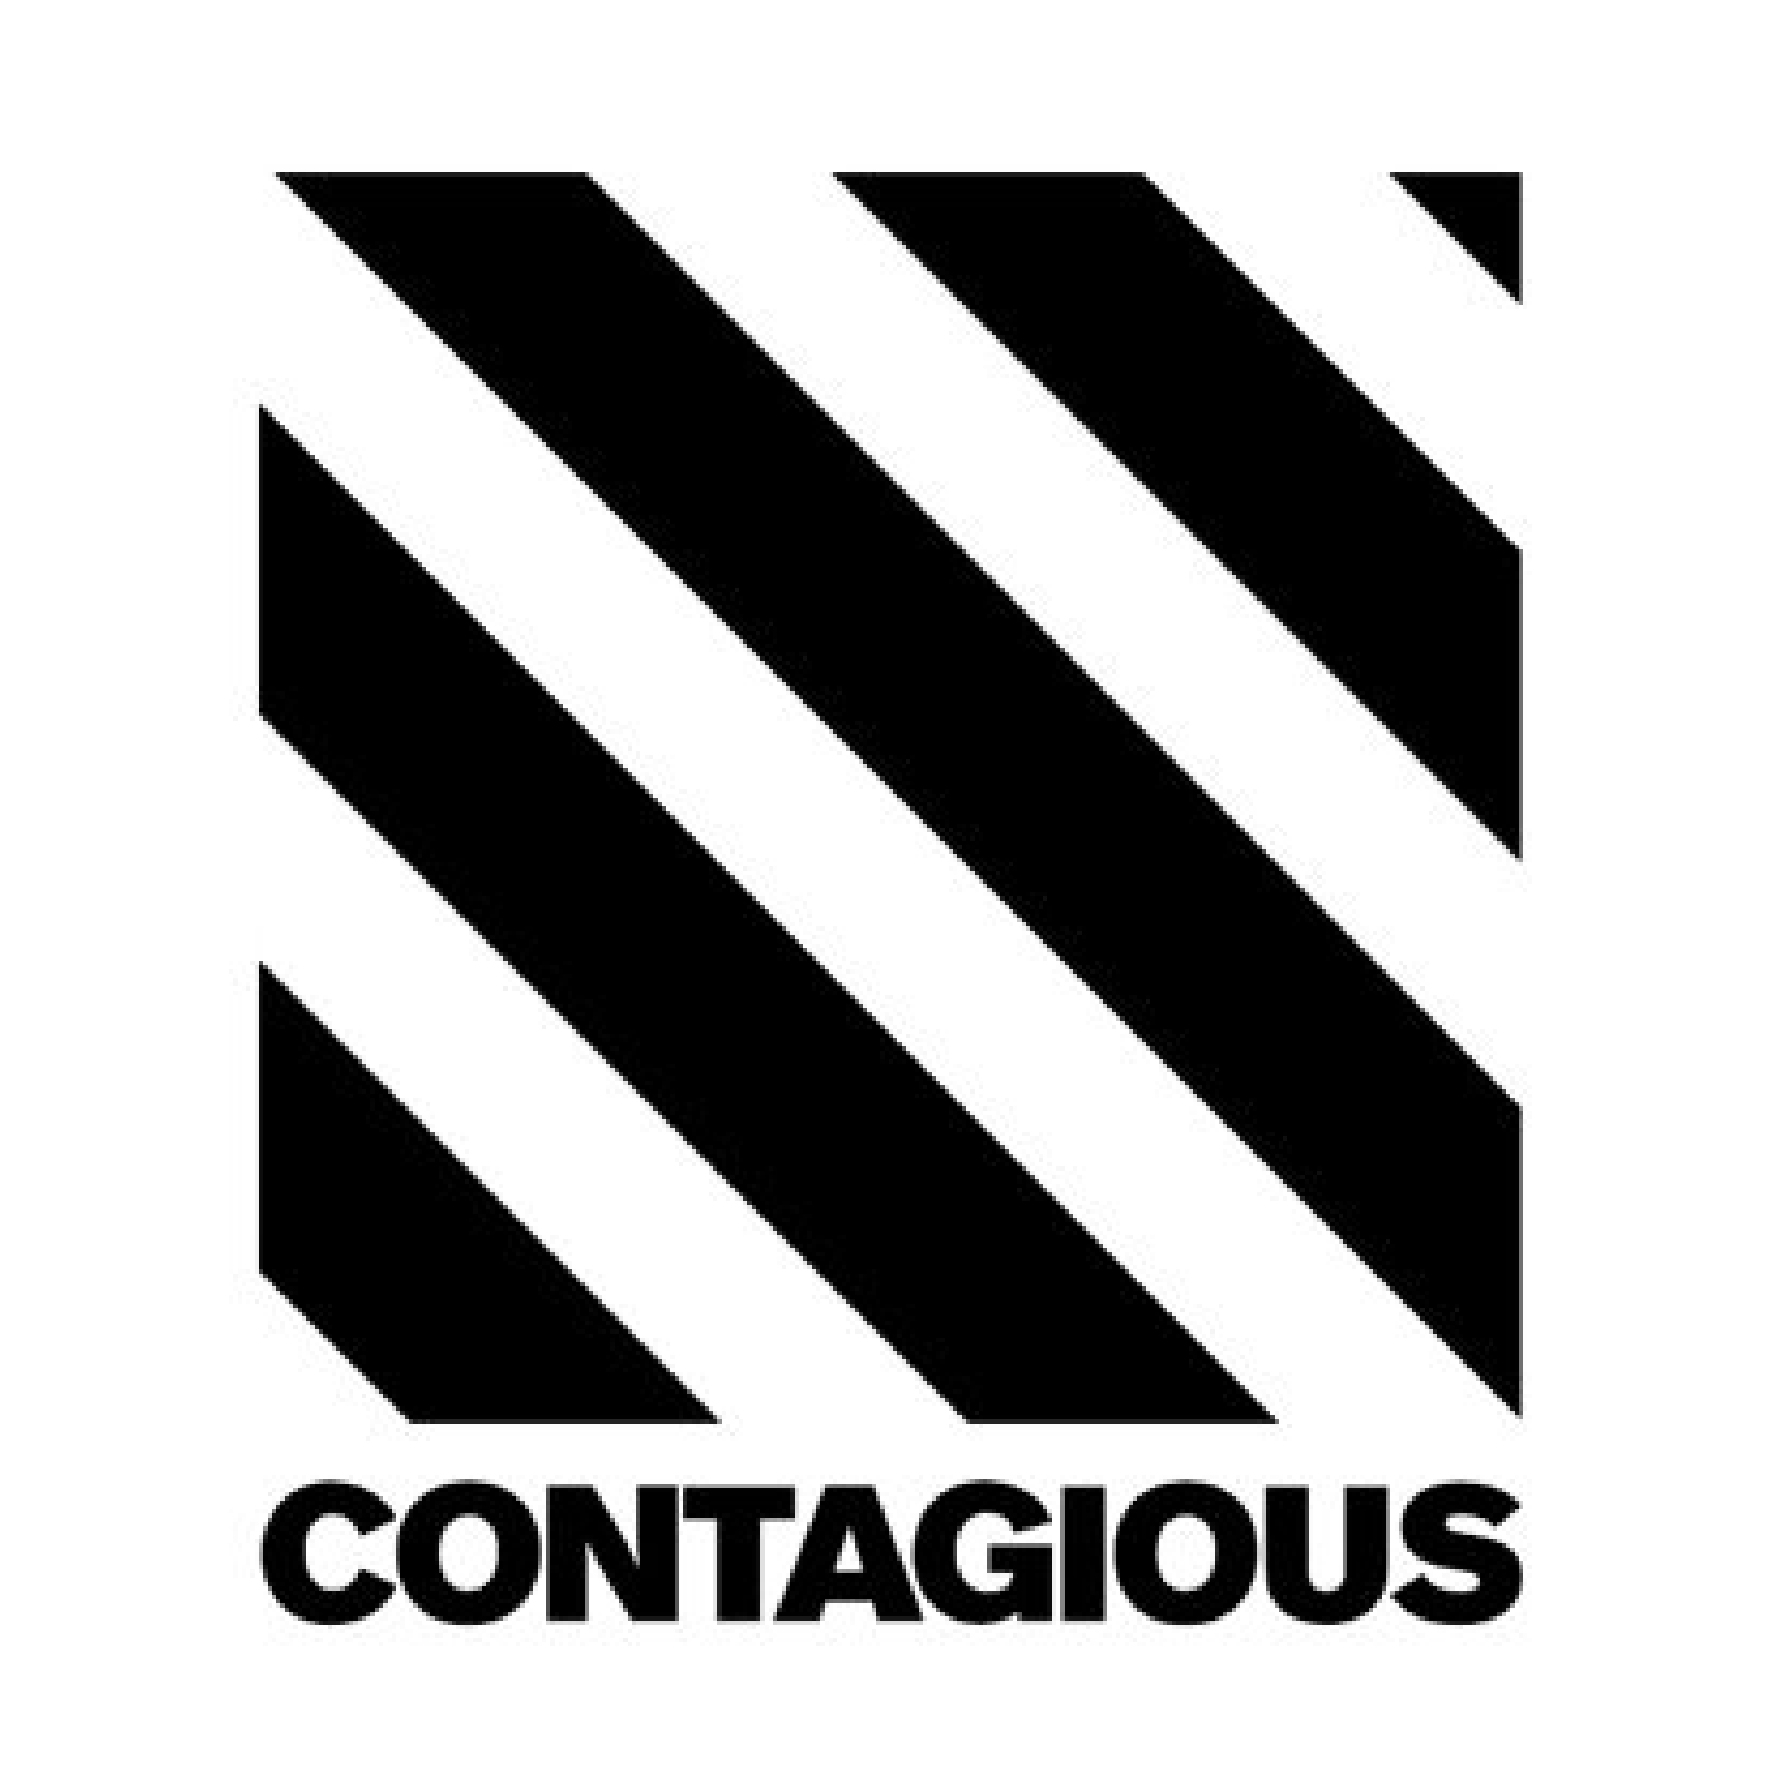 Contagious-01.jpg